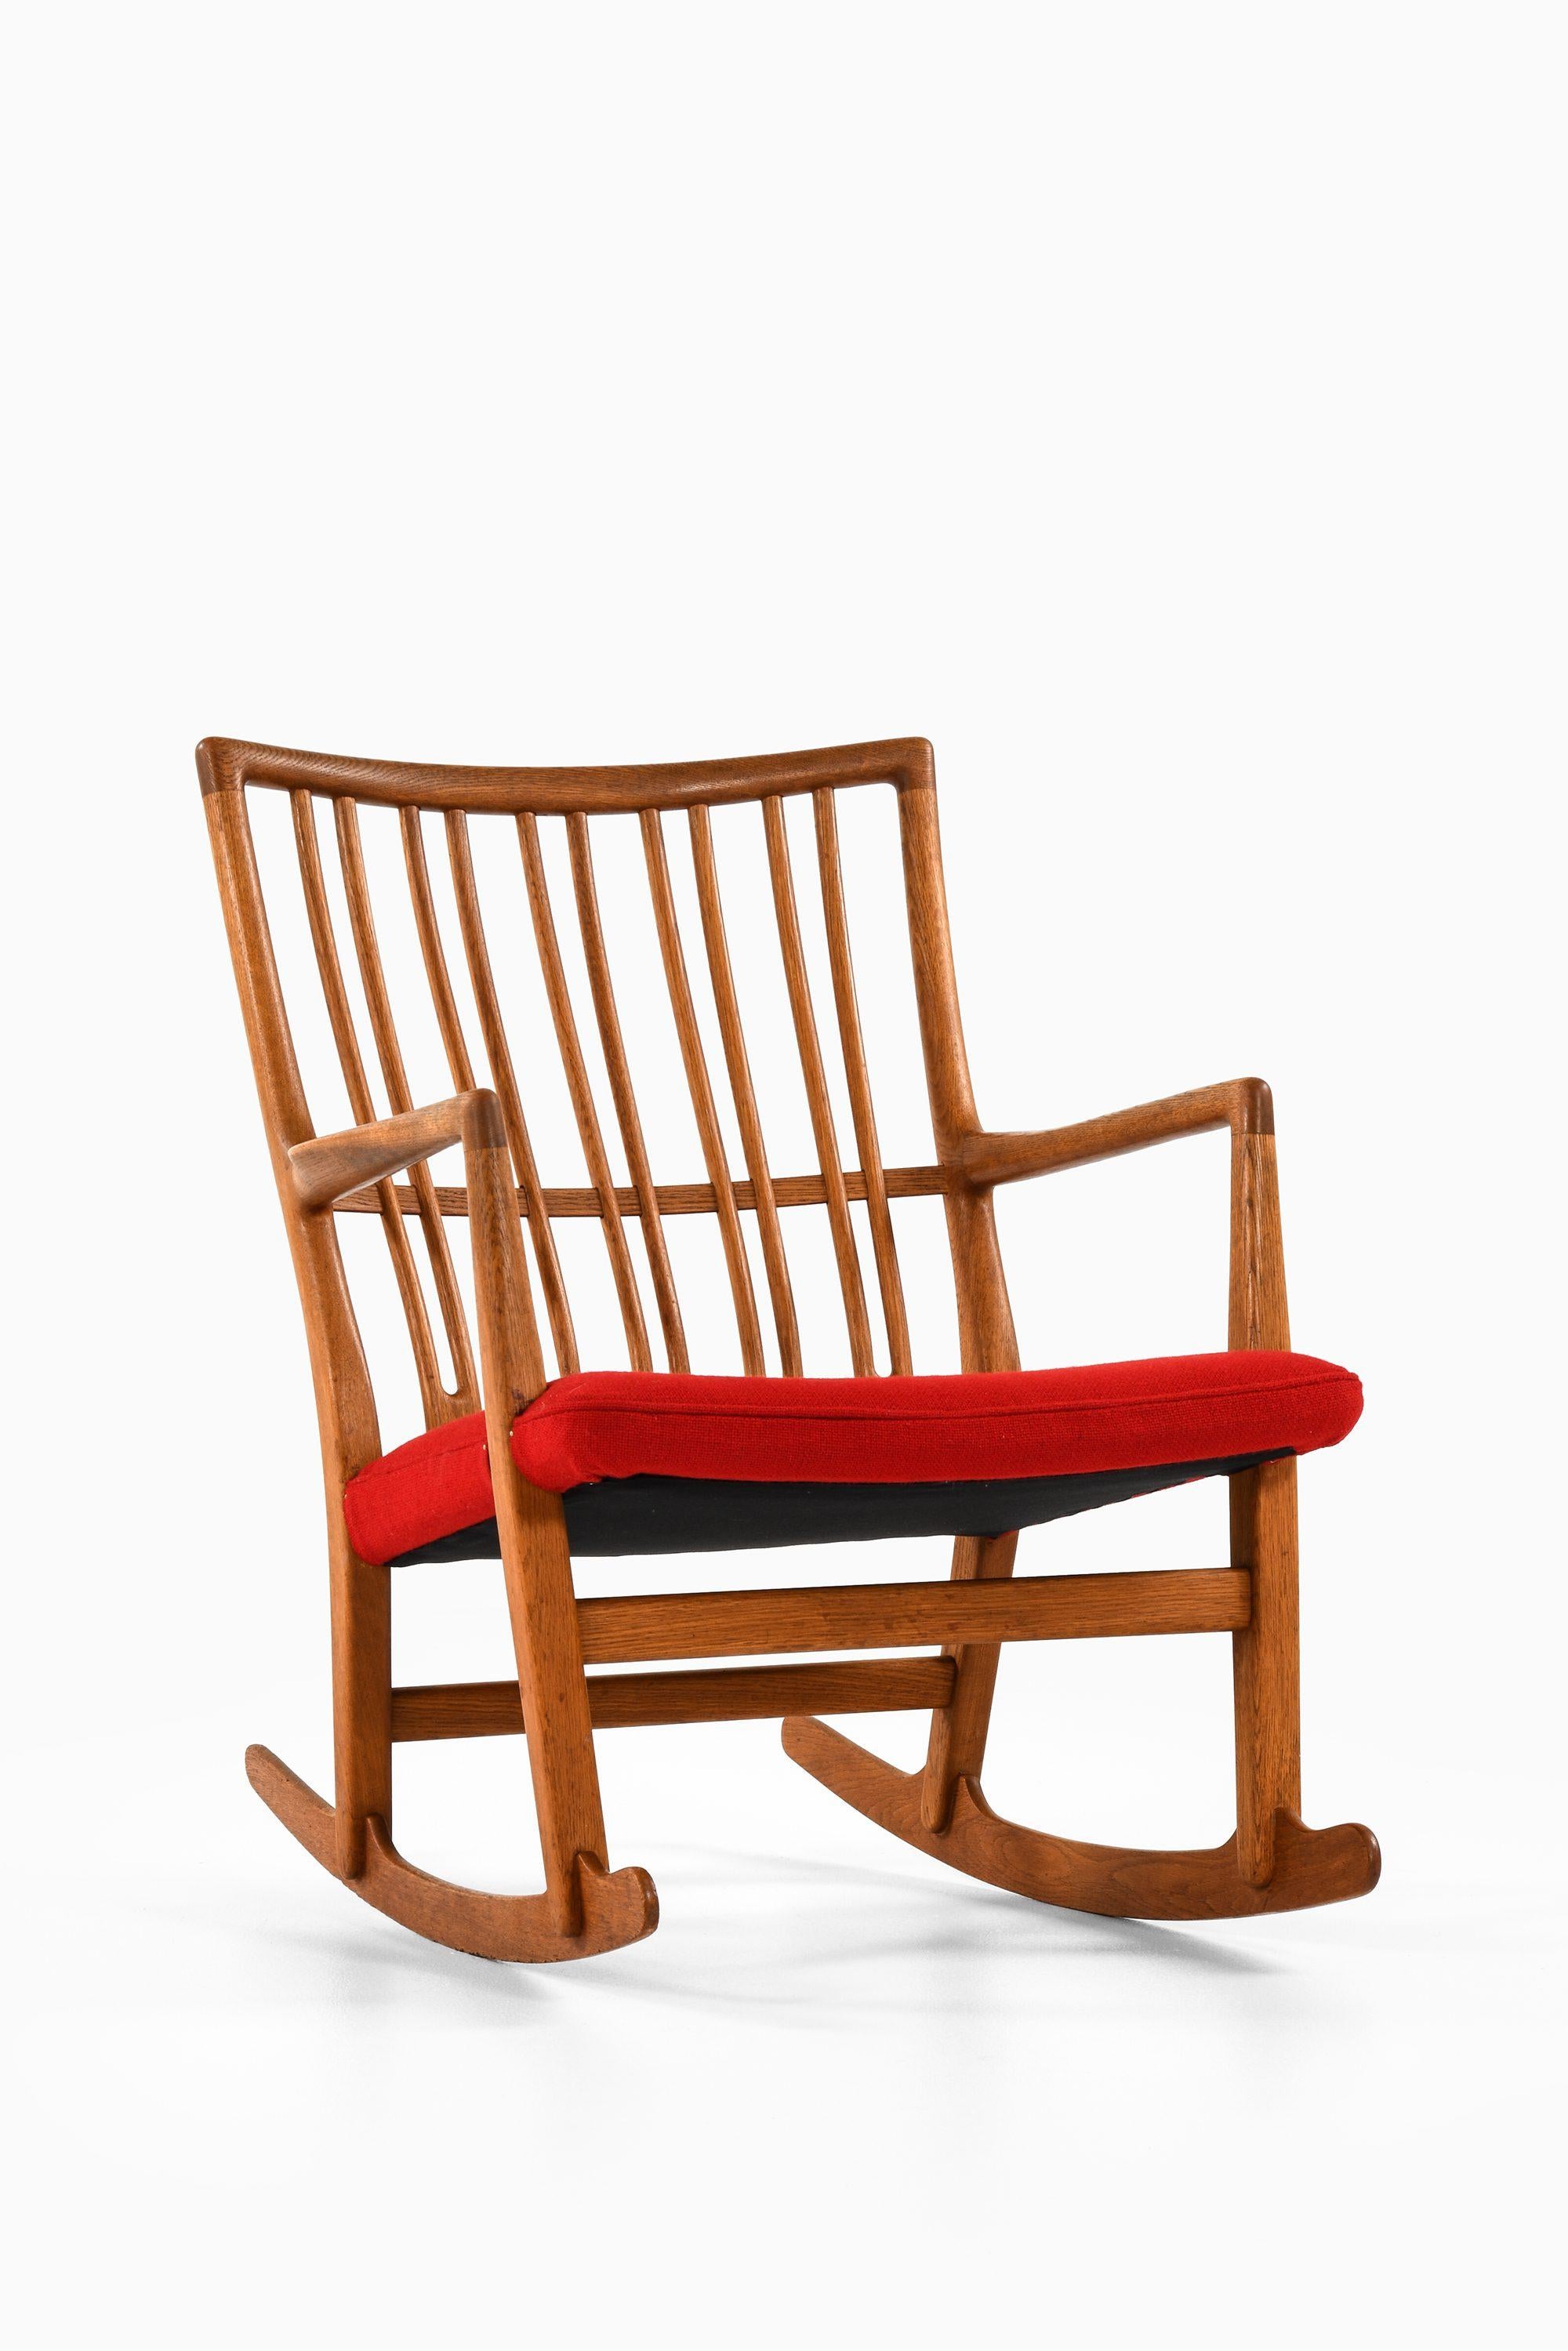 Chaise à bascule en chêne avec tissu de laine récemment retapissé par Hans Wegner, années 1950

Informations supplémentaires :
MATERIAL : Chêne et nouvellement rembourré en tissu de laine.
Style : Milieu du siècle, Scandinave
Rare fauteuil à bascule